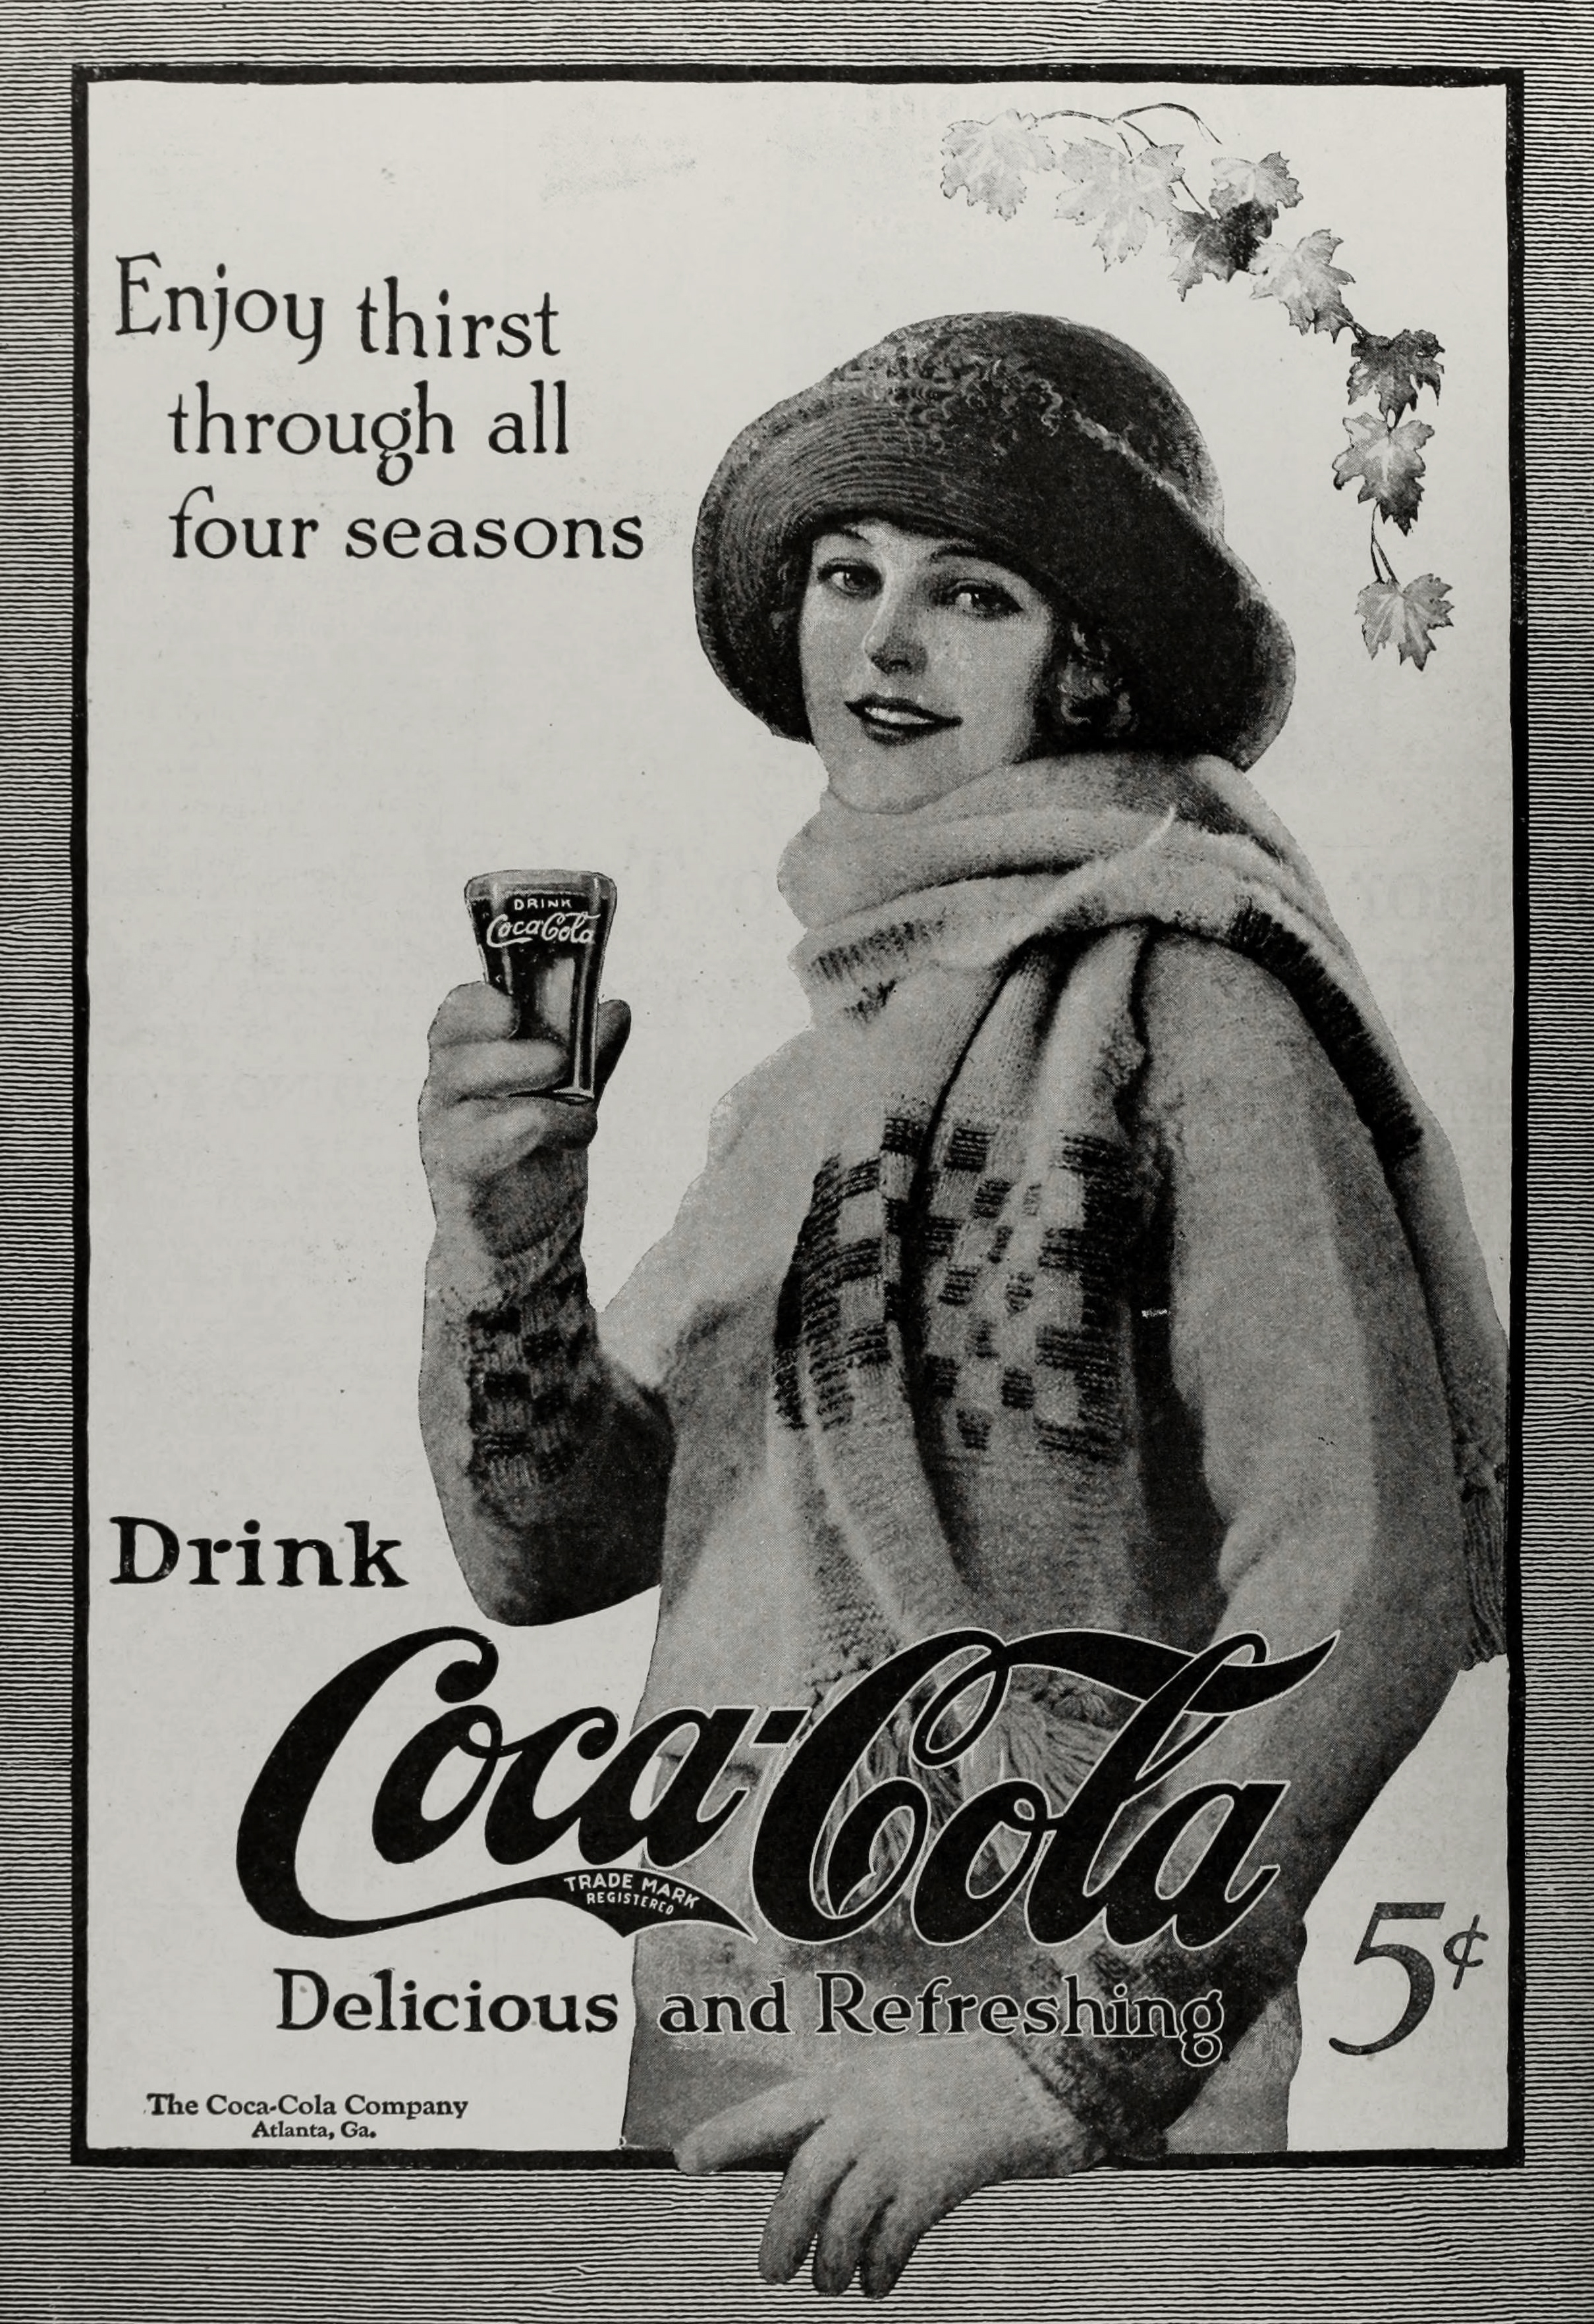 Coca-Cola Ad circa 1923 - Scene of a Woman Outdoor in Winter Holding a Coke